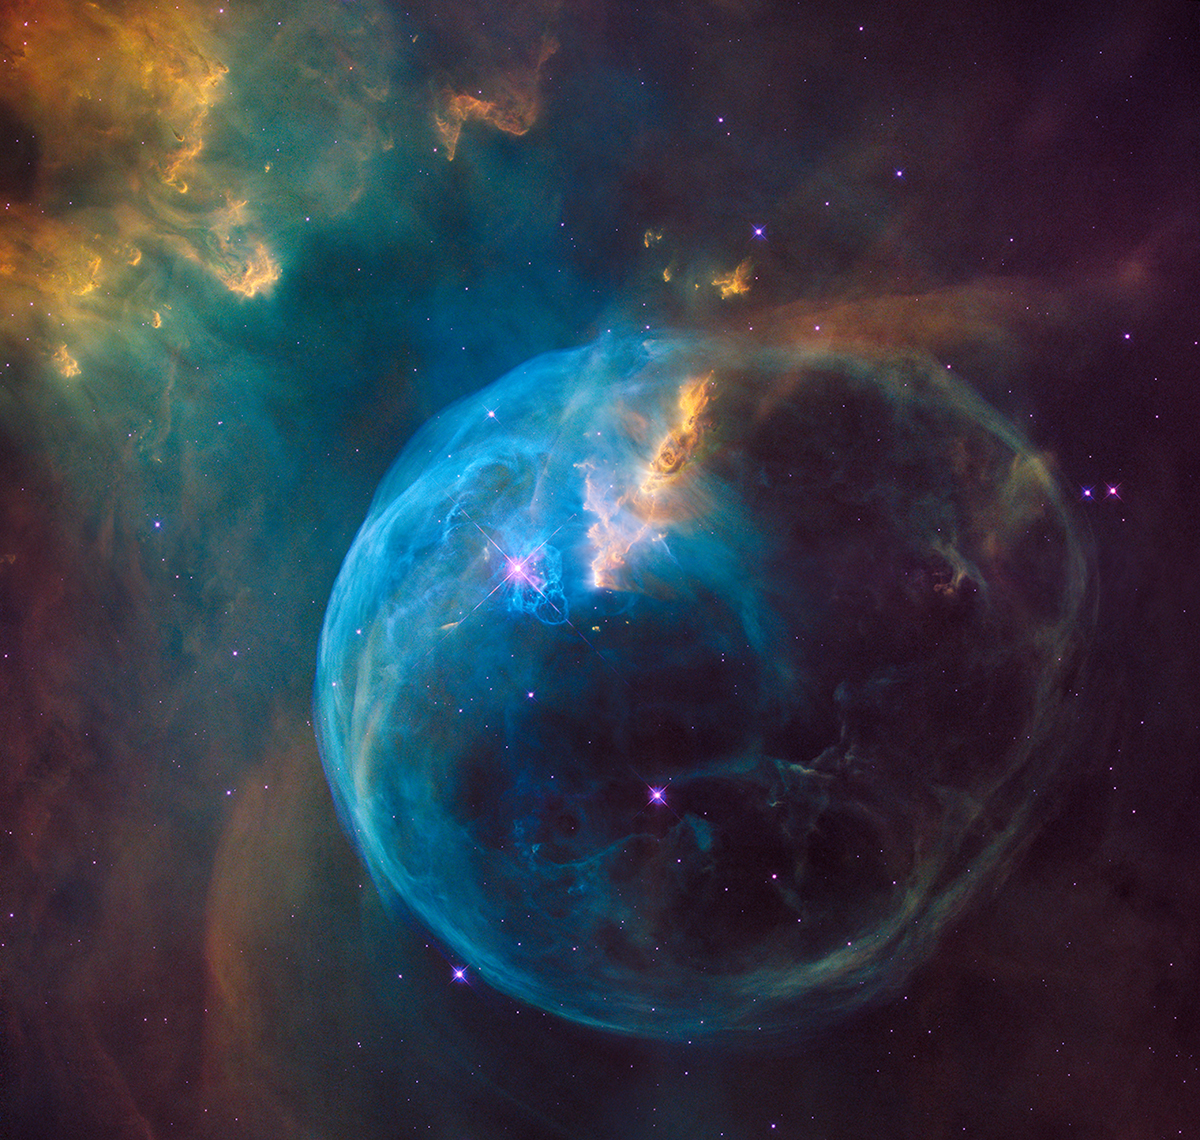 Enorme burbuja lanzada al espacio por una estrella caliente y masiva, captada por el telescopio espacial Hubble. Créditos: NASA, ESA y el equipo de herencia de Hubble (STScI / AURA), F. Summers, G. Bacon, Z. Levay y L. Frattare (Viz 3D Team, STScI)